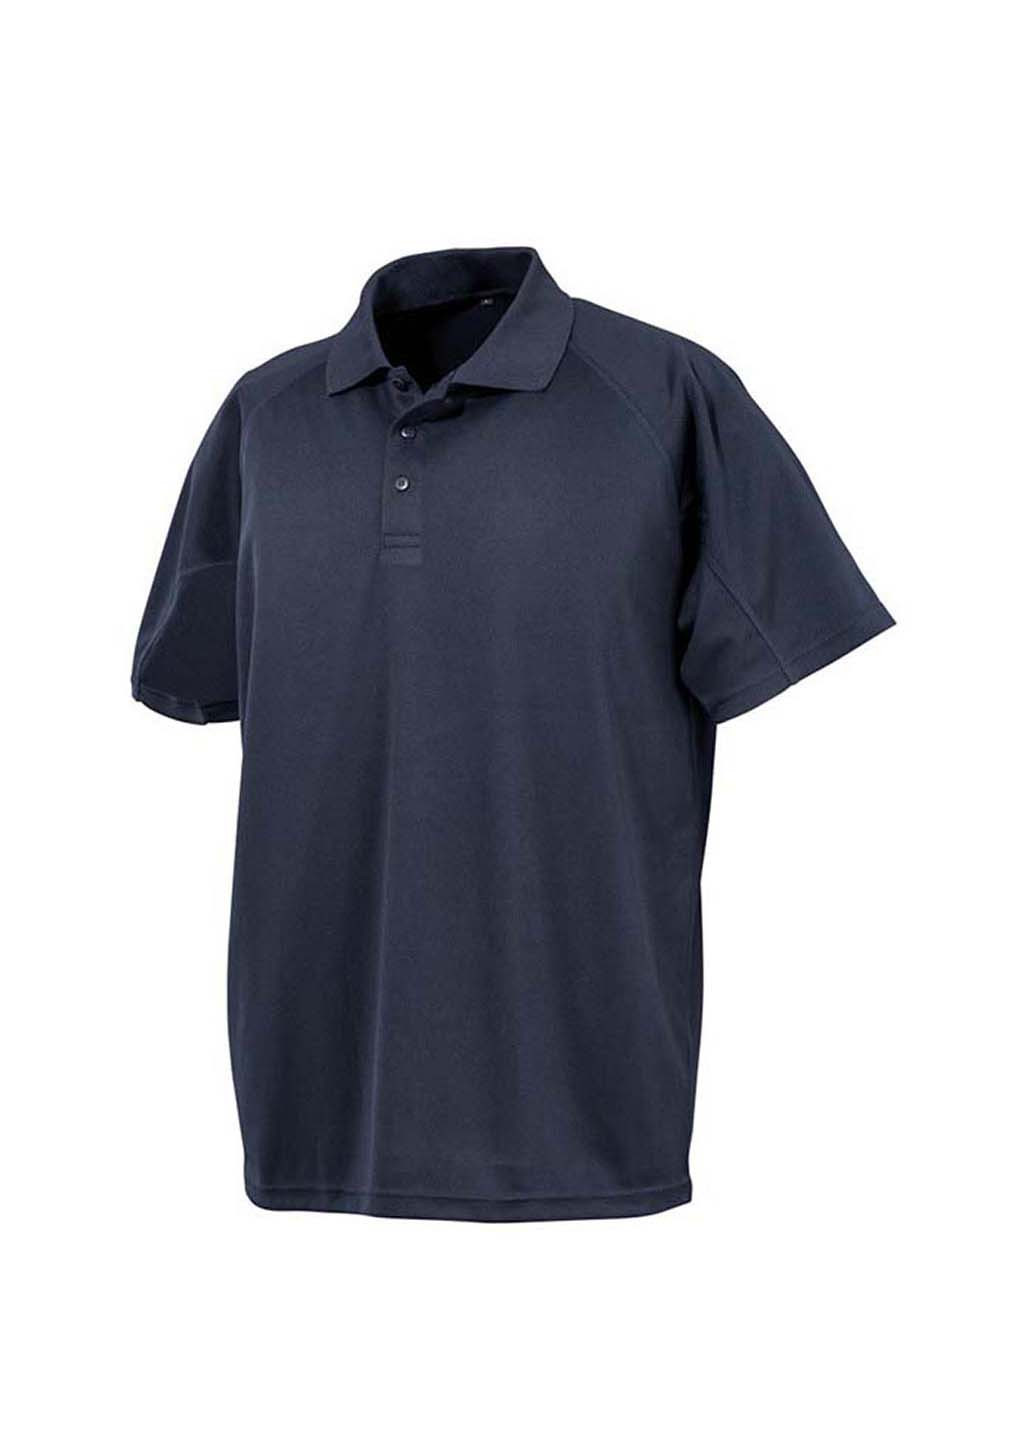 Темно-синяя футболка-поло для мужчин Spiro